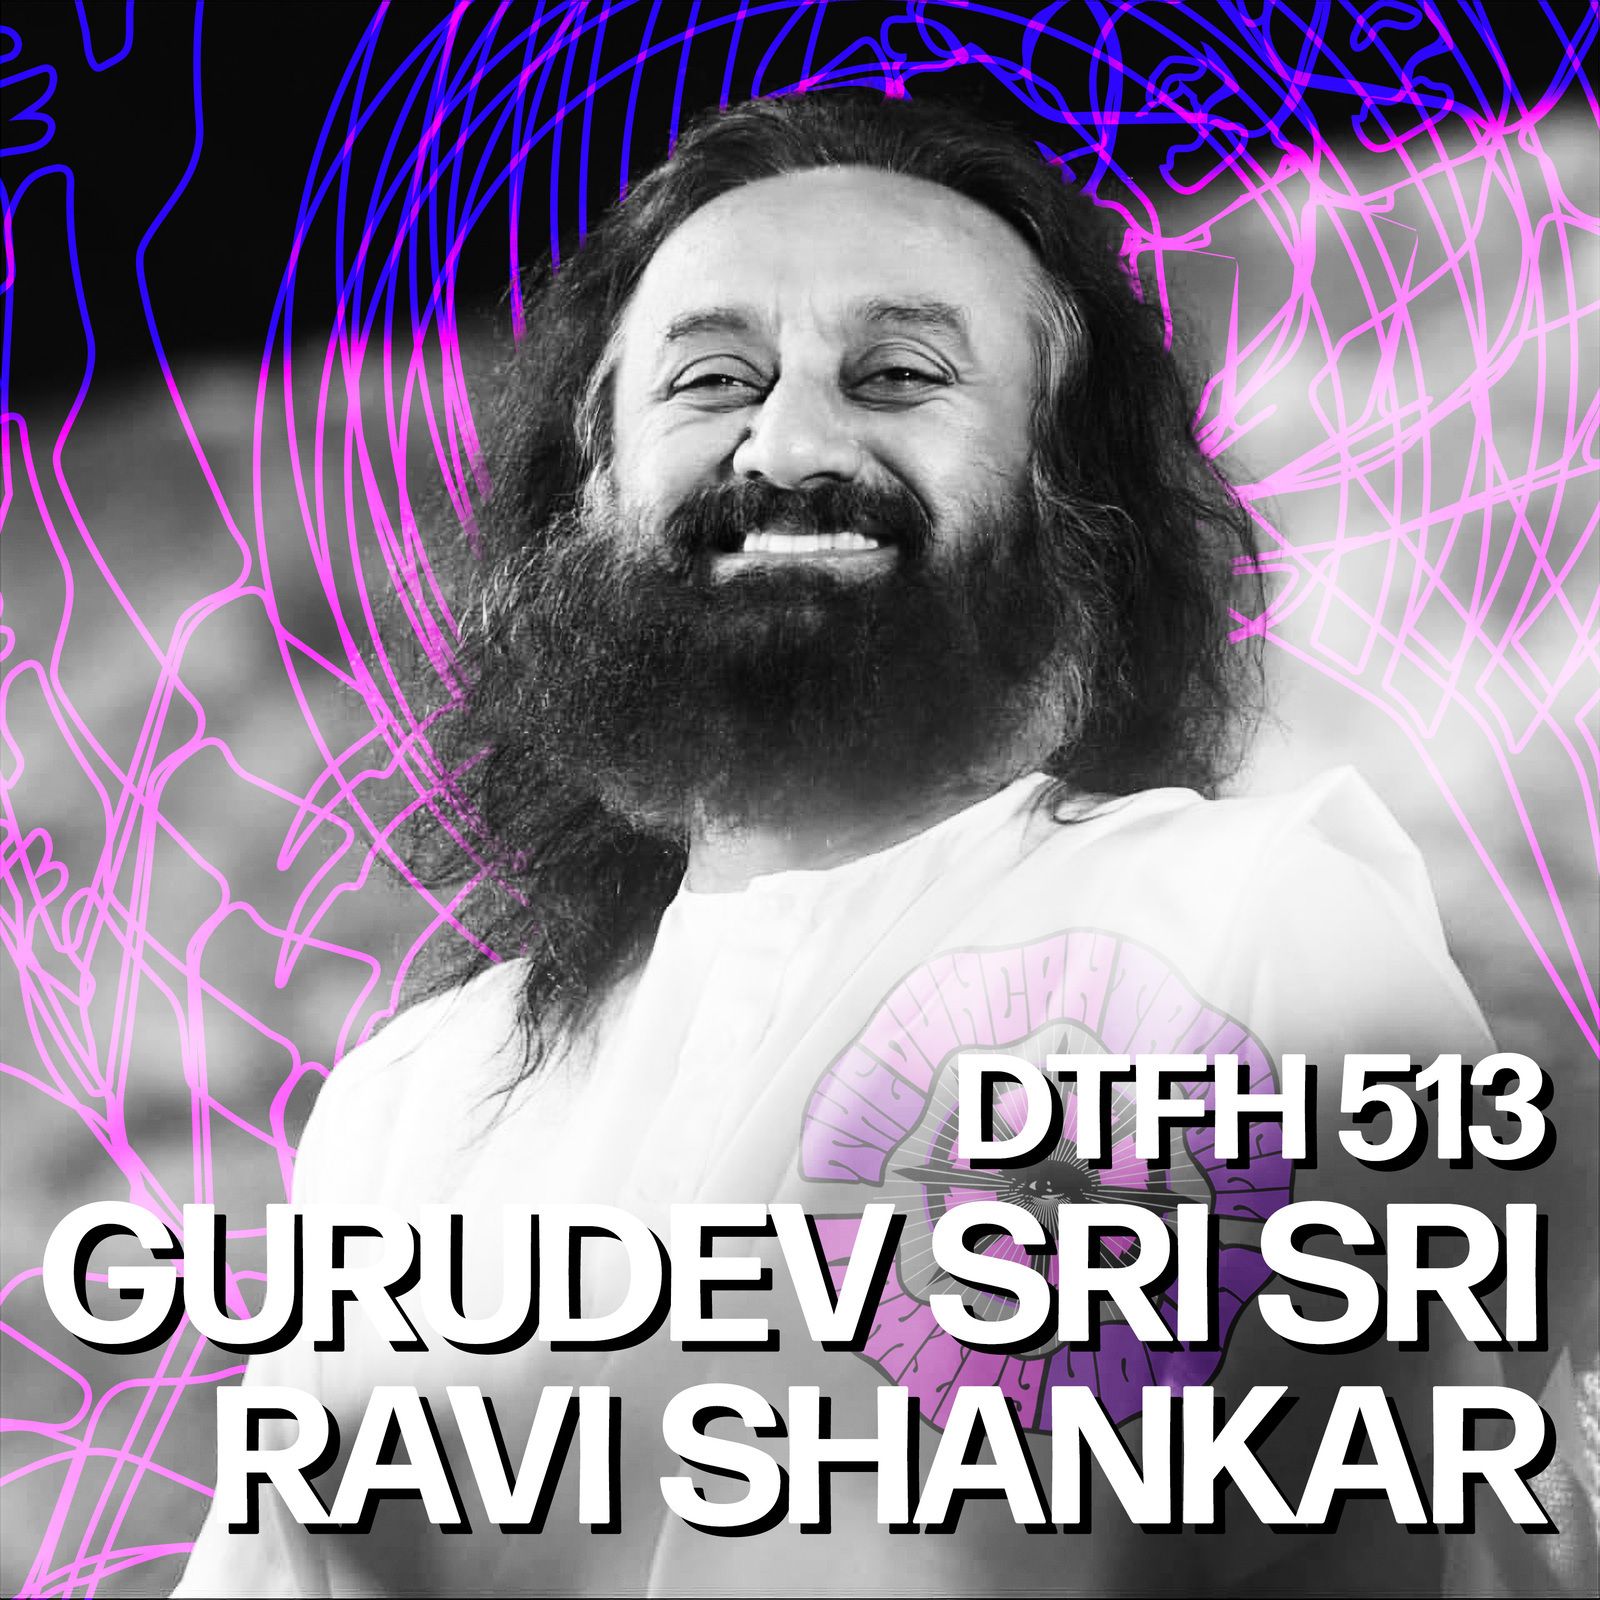 517: Gurudev Sri Sri Ravi Shankar